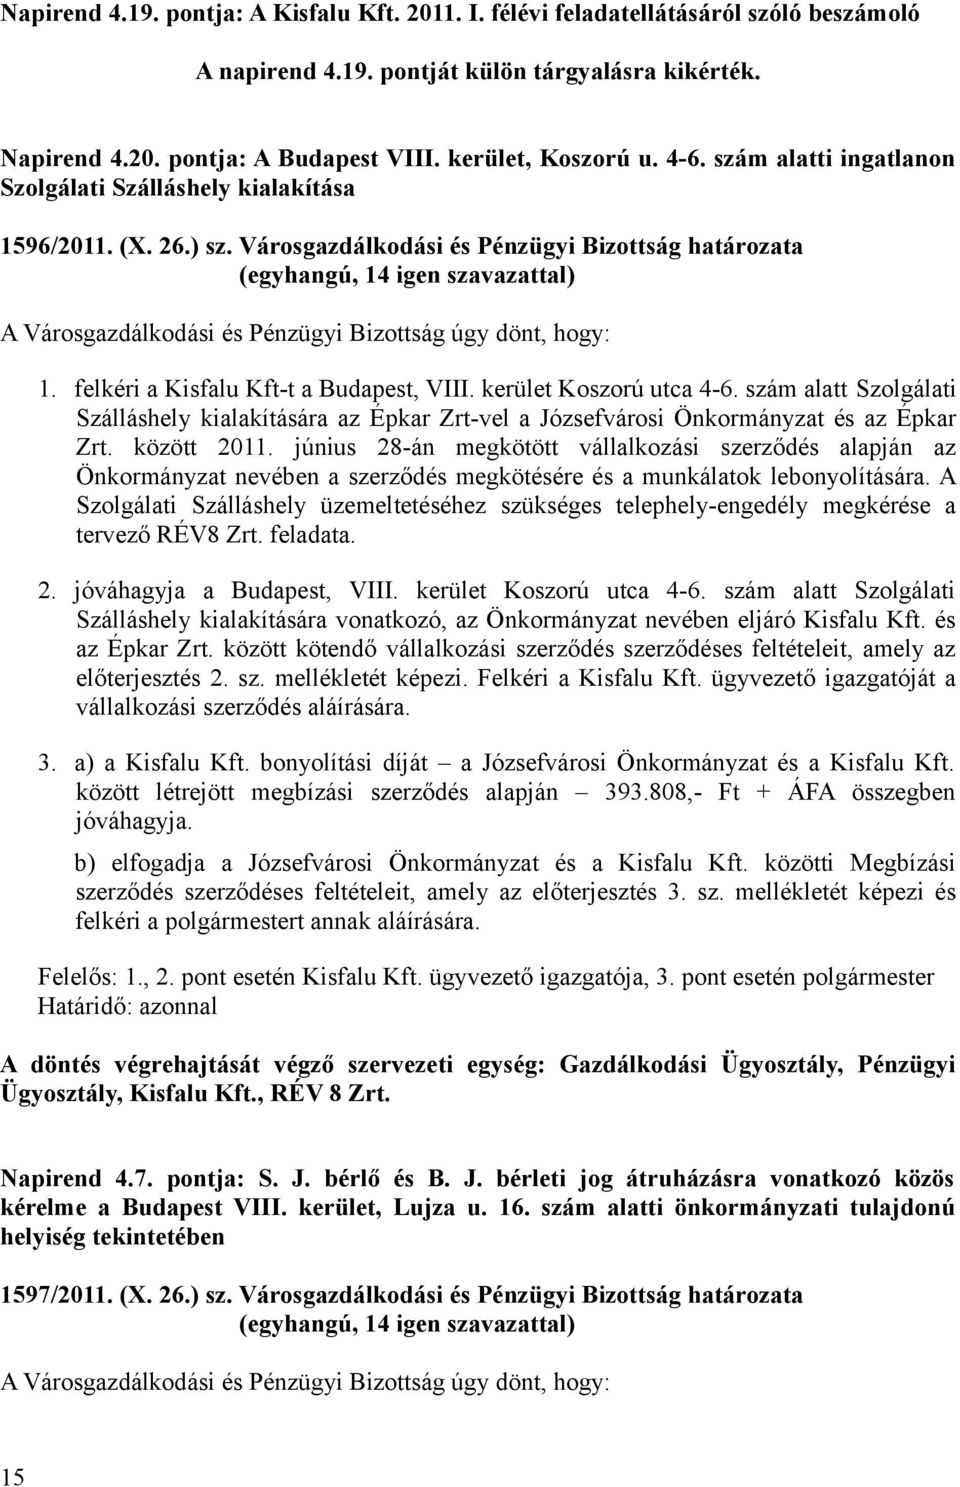 Városgazdálkodási és Pénzügyi Bizottság határozata A Városgazdálkodási és Pénzügyi Bizottság úgy dönt, hogy: 1. felkéri a Kisfalu Kft-t a Budapest, VIII. kerület Koszorú utca 4-6.